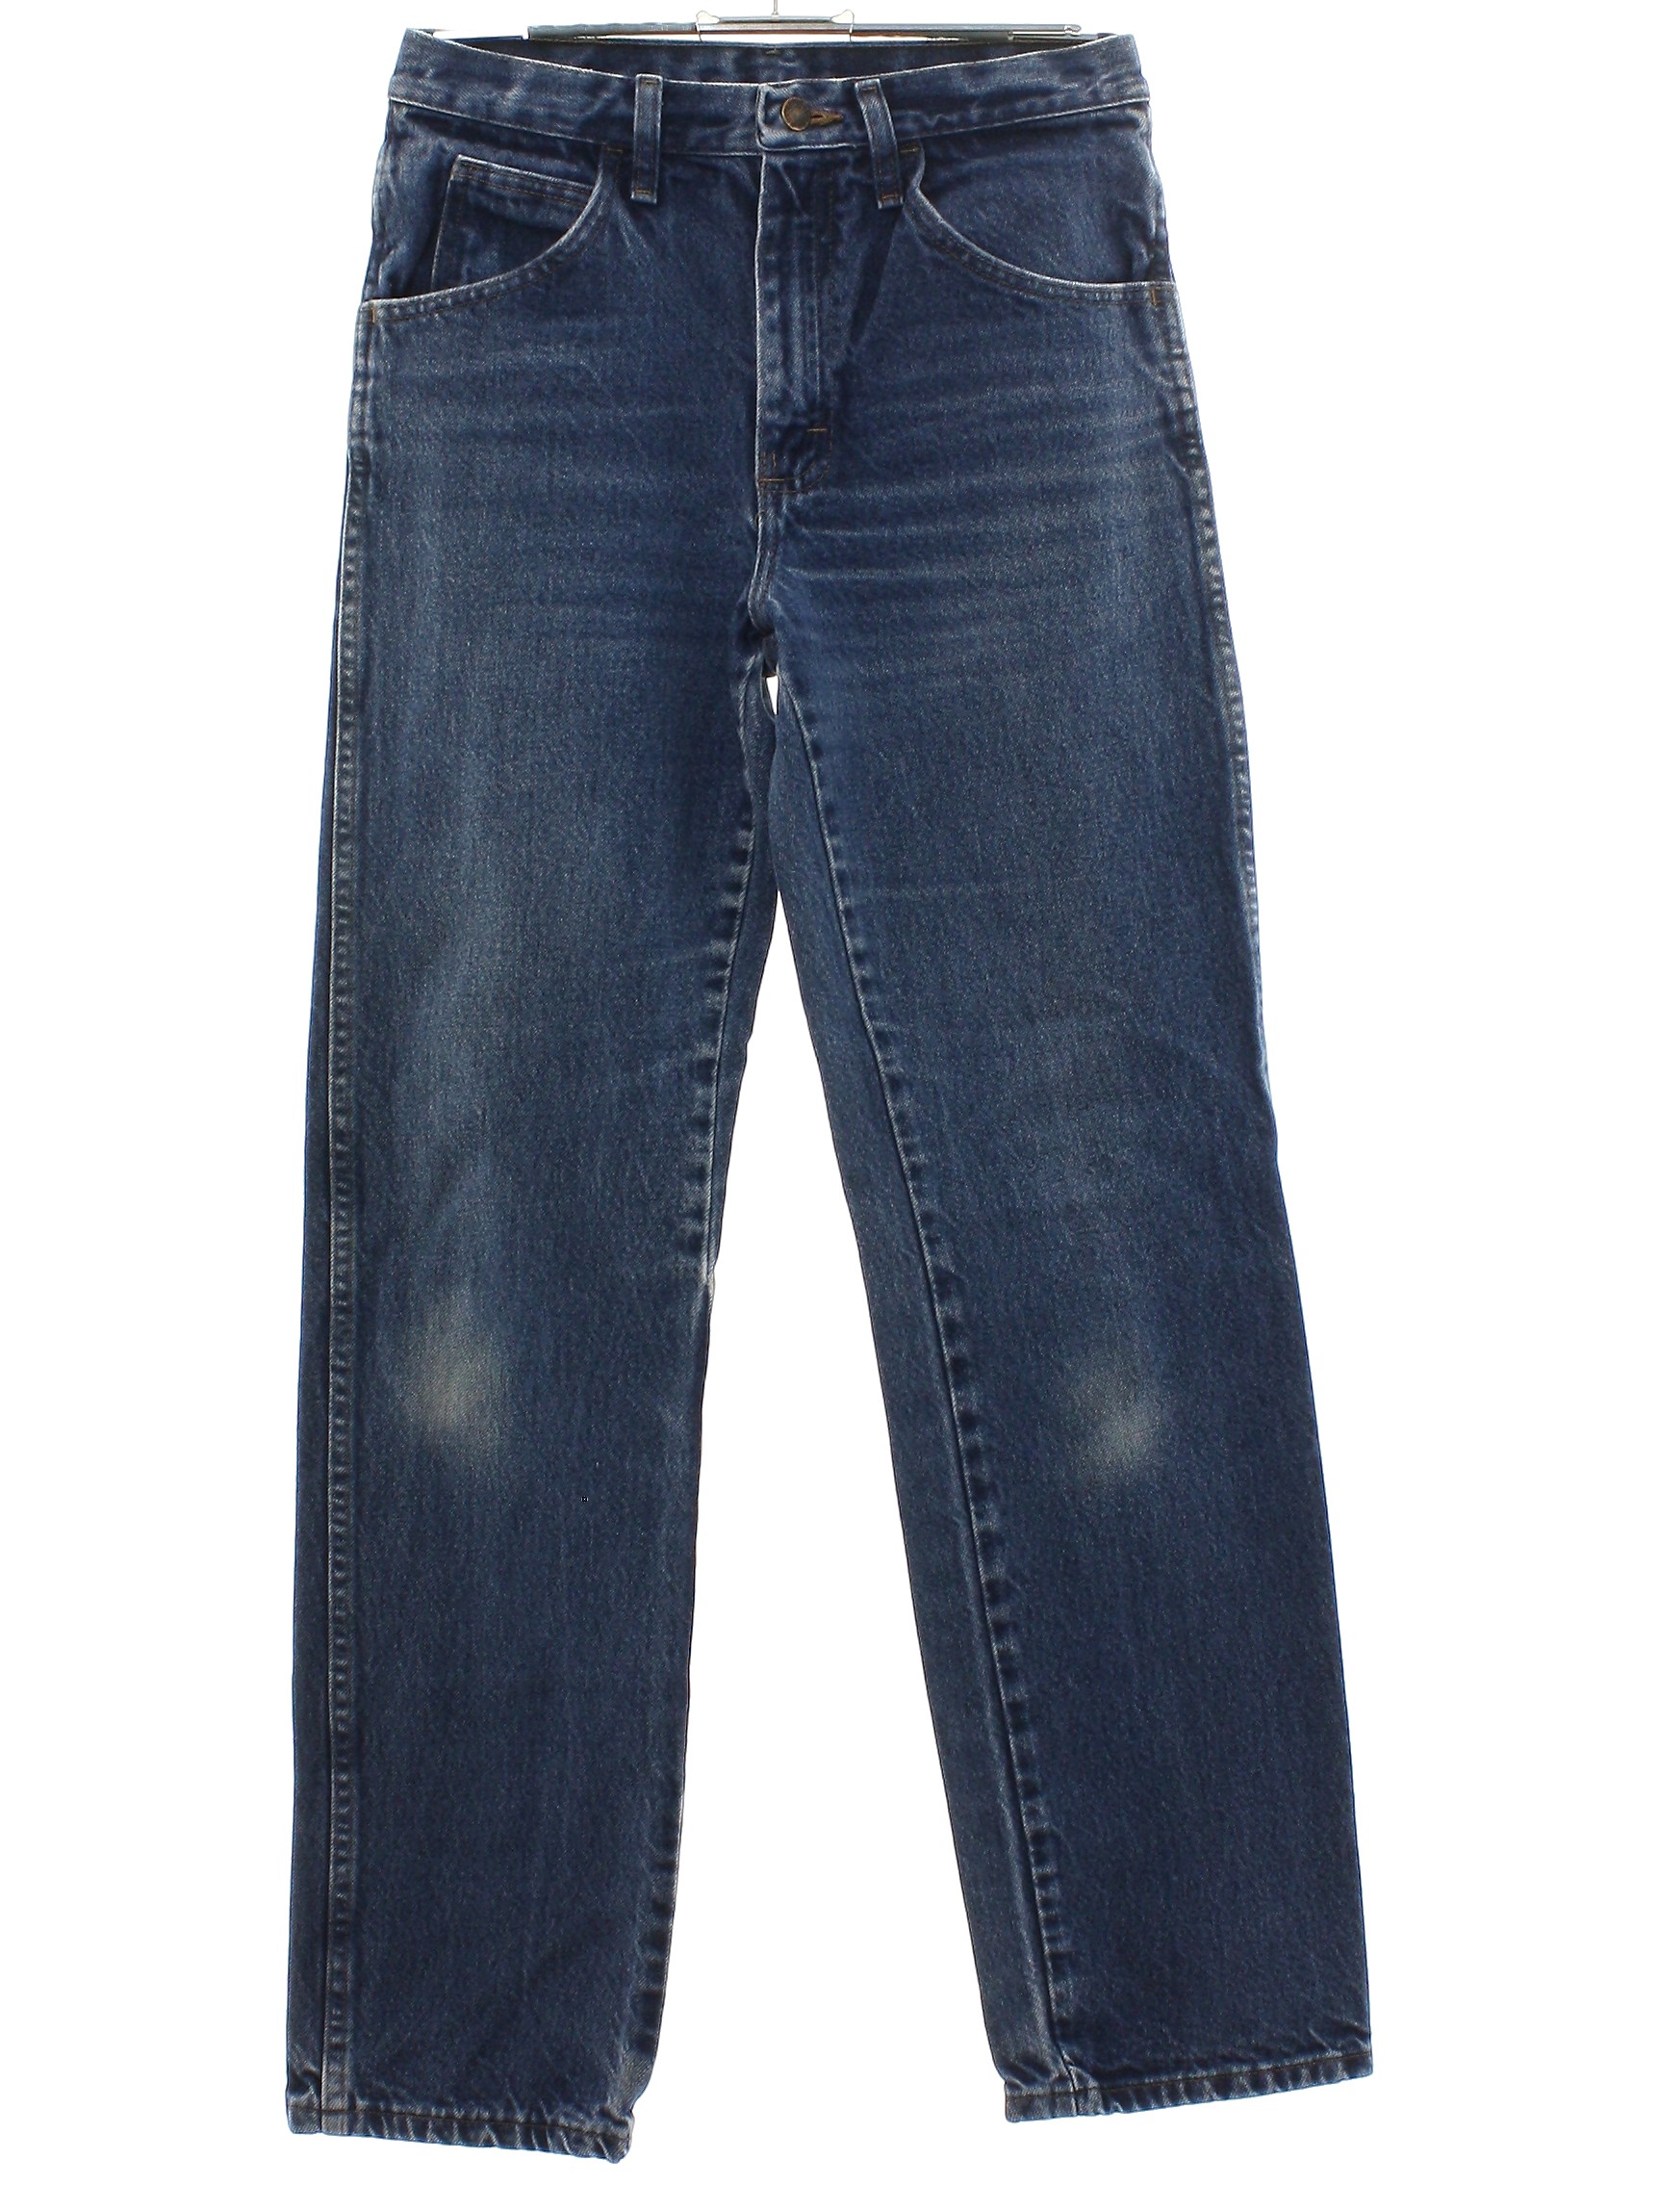 Retro 1990s Pants: 90s -Rustler- Unisex faded colors cotton denim jeans ...